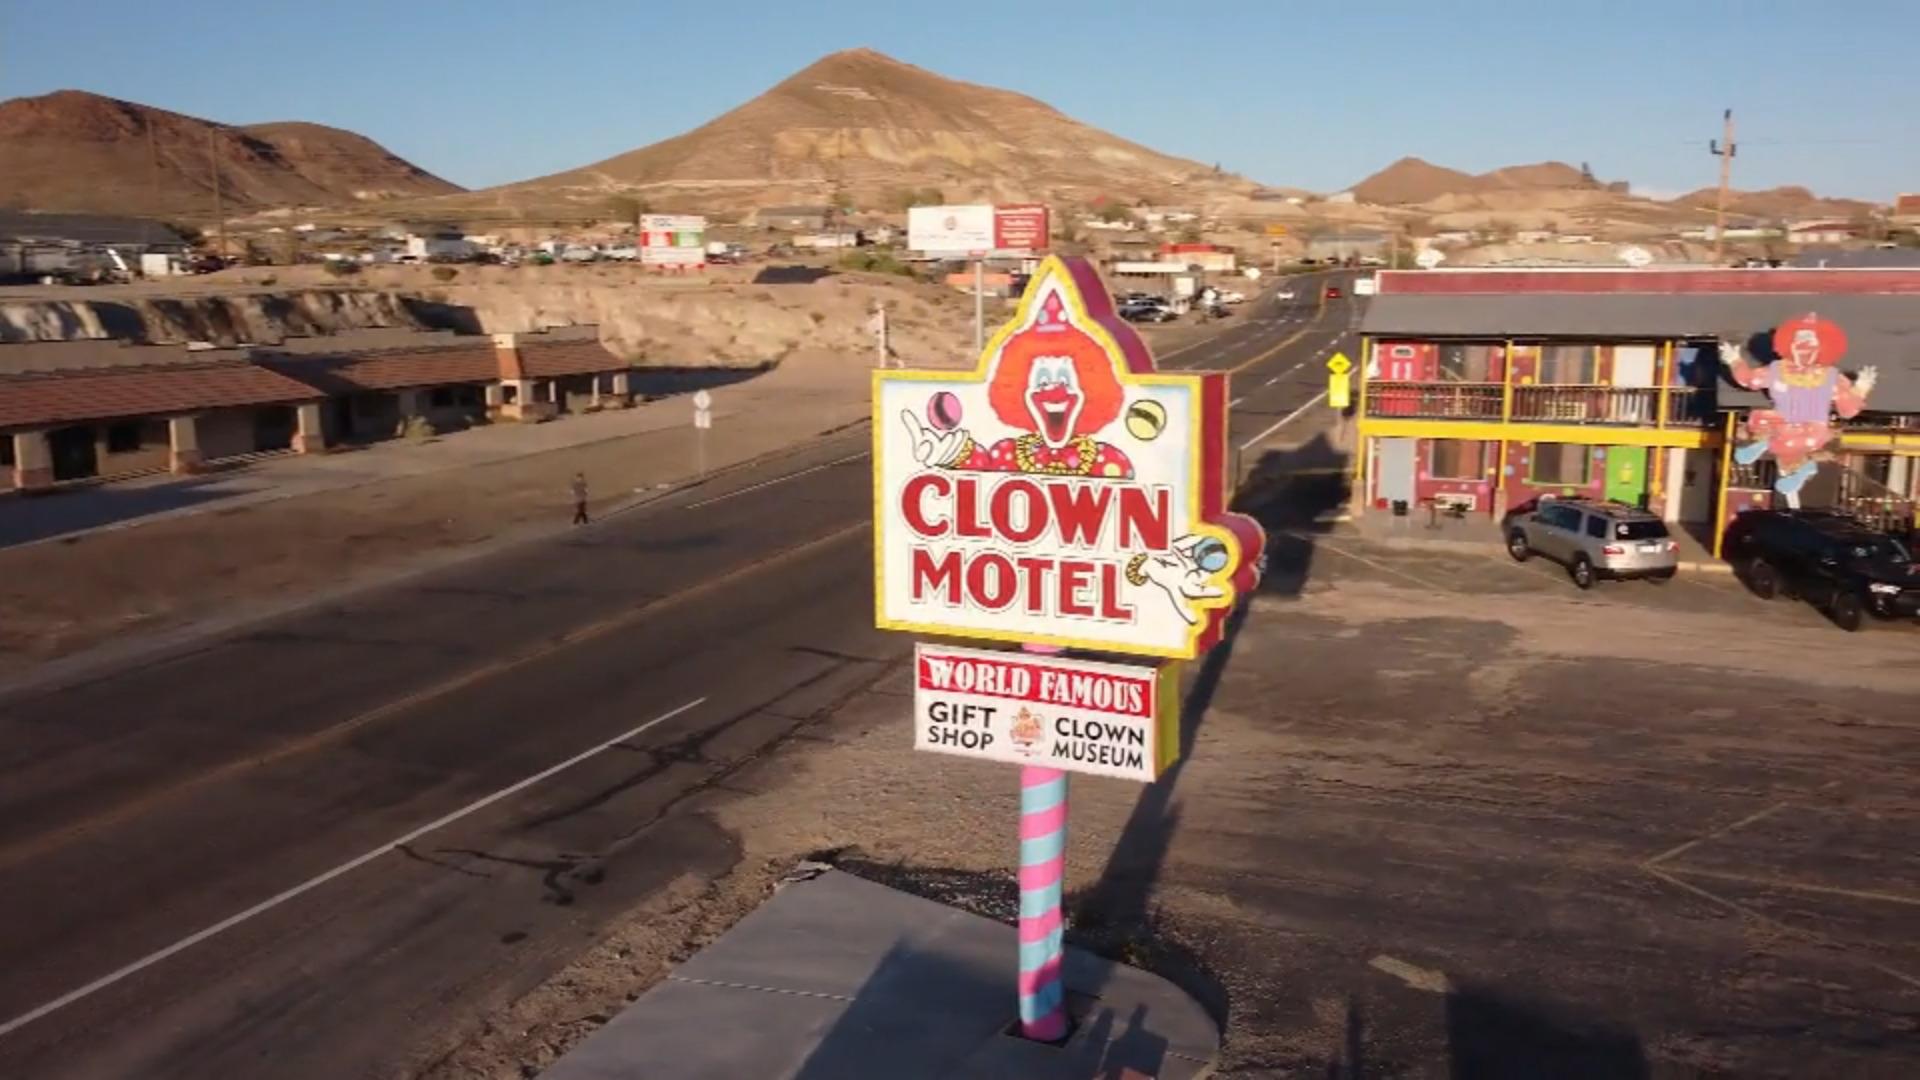 Das Horror-Clown-Hotel In Amerika ist DAS gerade der letzte Schrei